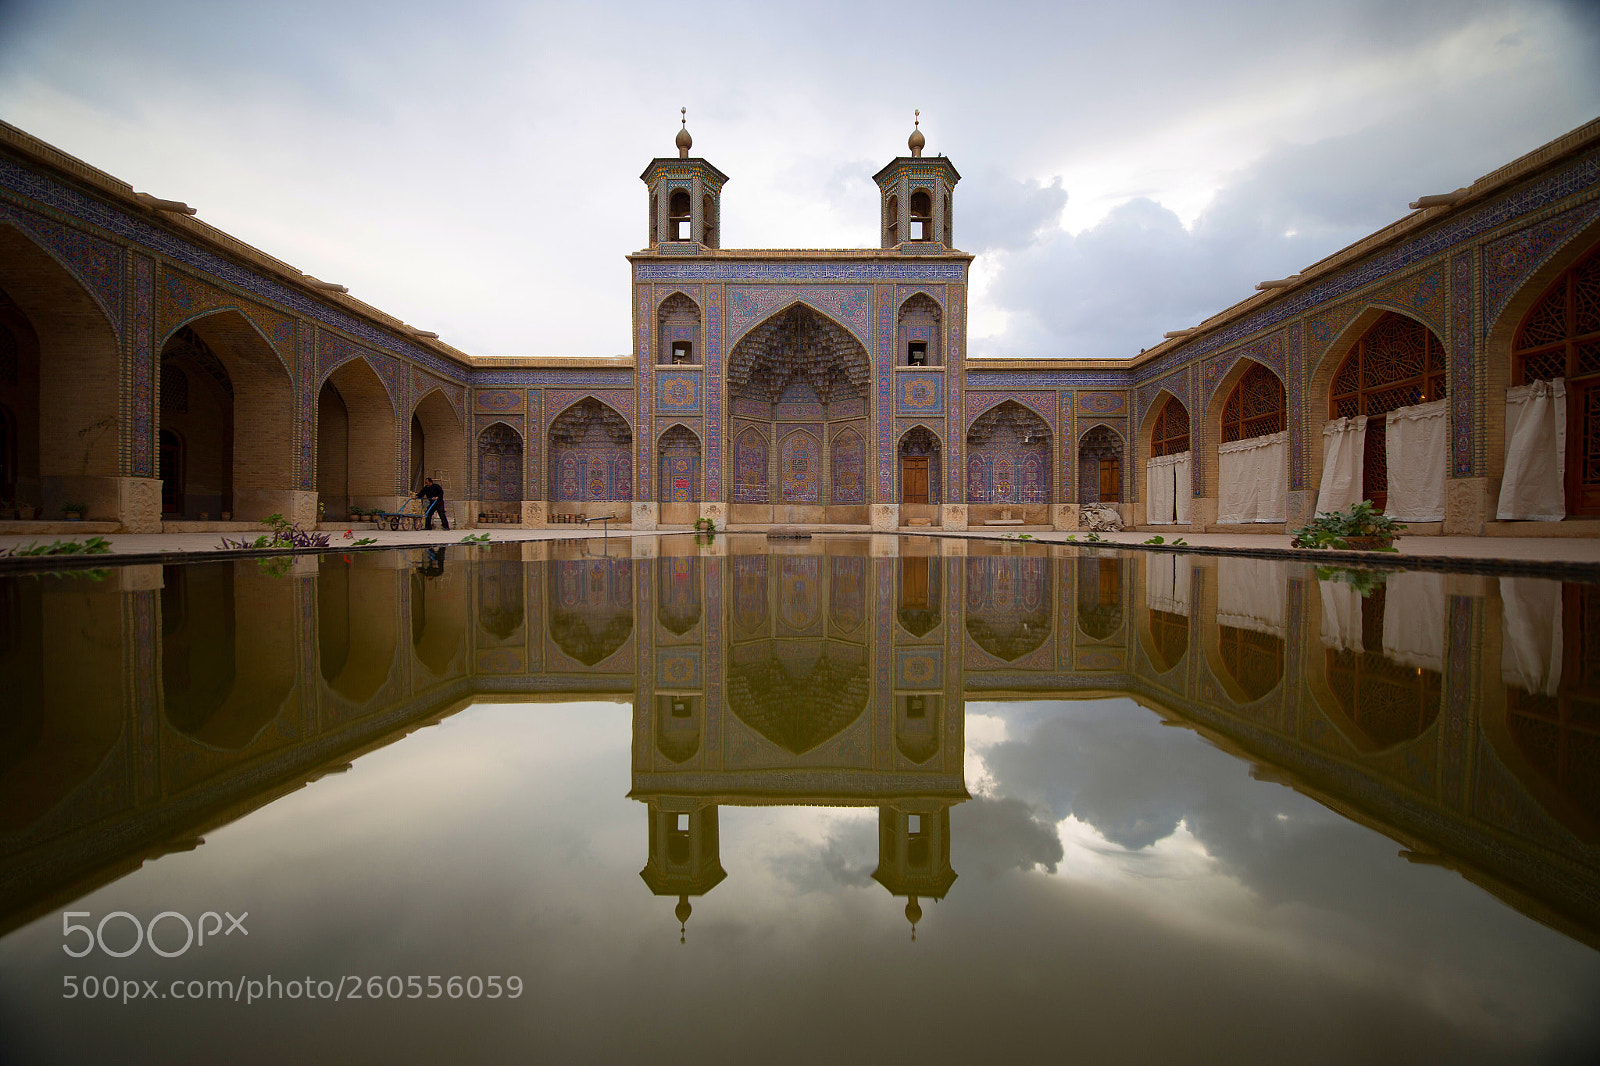 Canon EOS 6D sample photo. Mosque, shiraz, iran photography